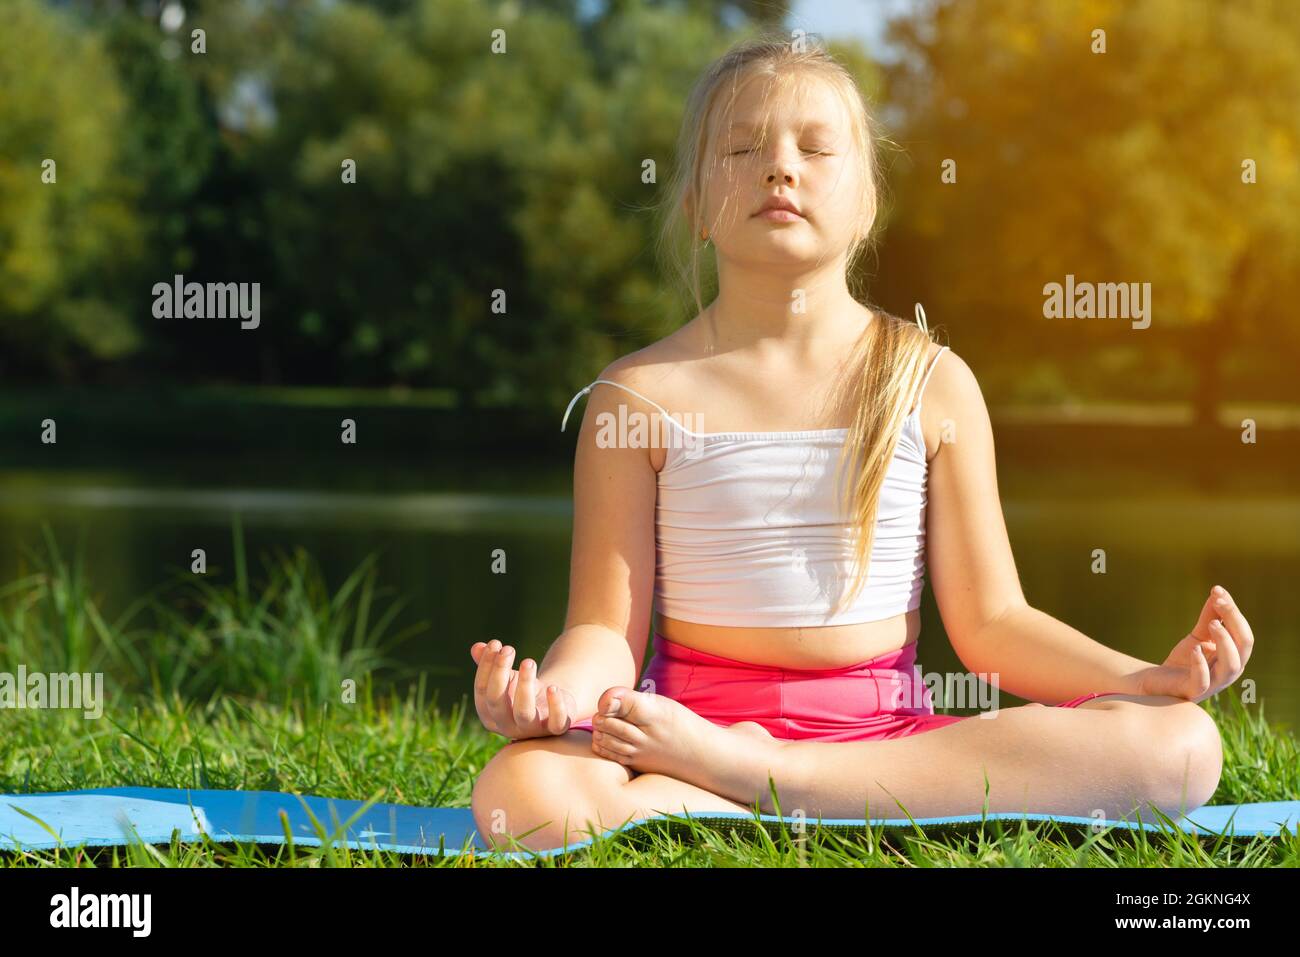 Kleine süße kaukasische Mädchen üben Yoga-Pose auf Matte im Park, Gesundheit und Bewegung Konzept. Stockfoto